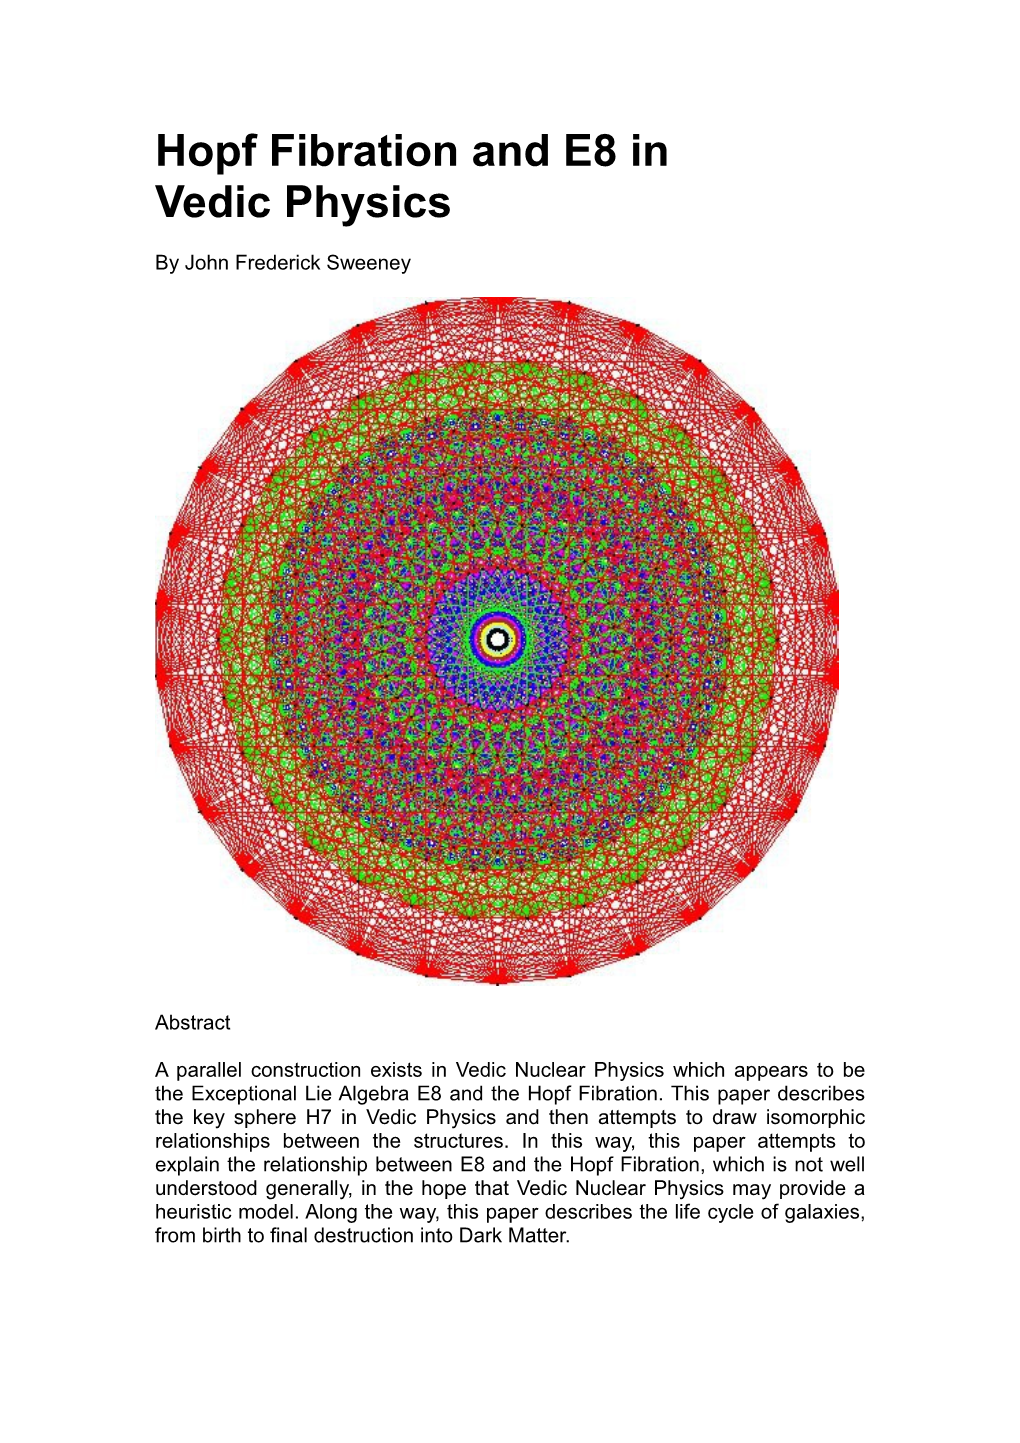 Hopf Fibration and E8 in Vedic Physics